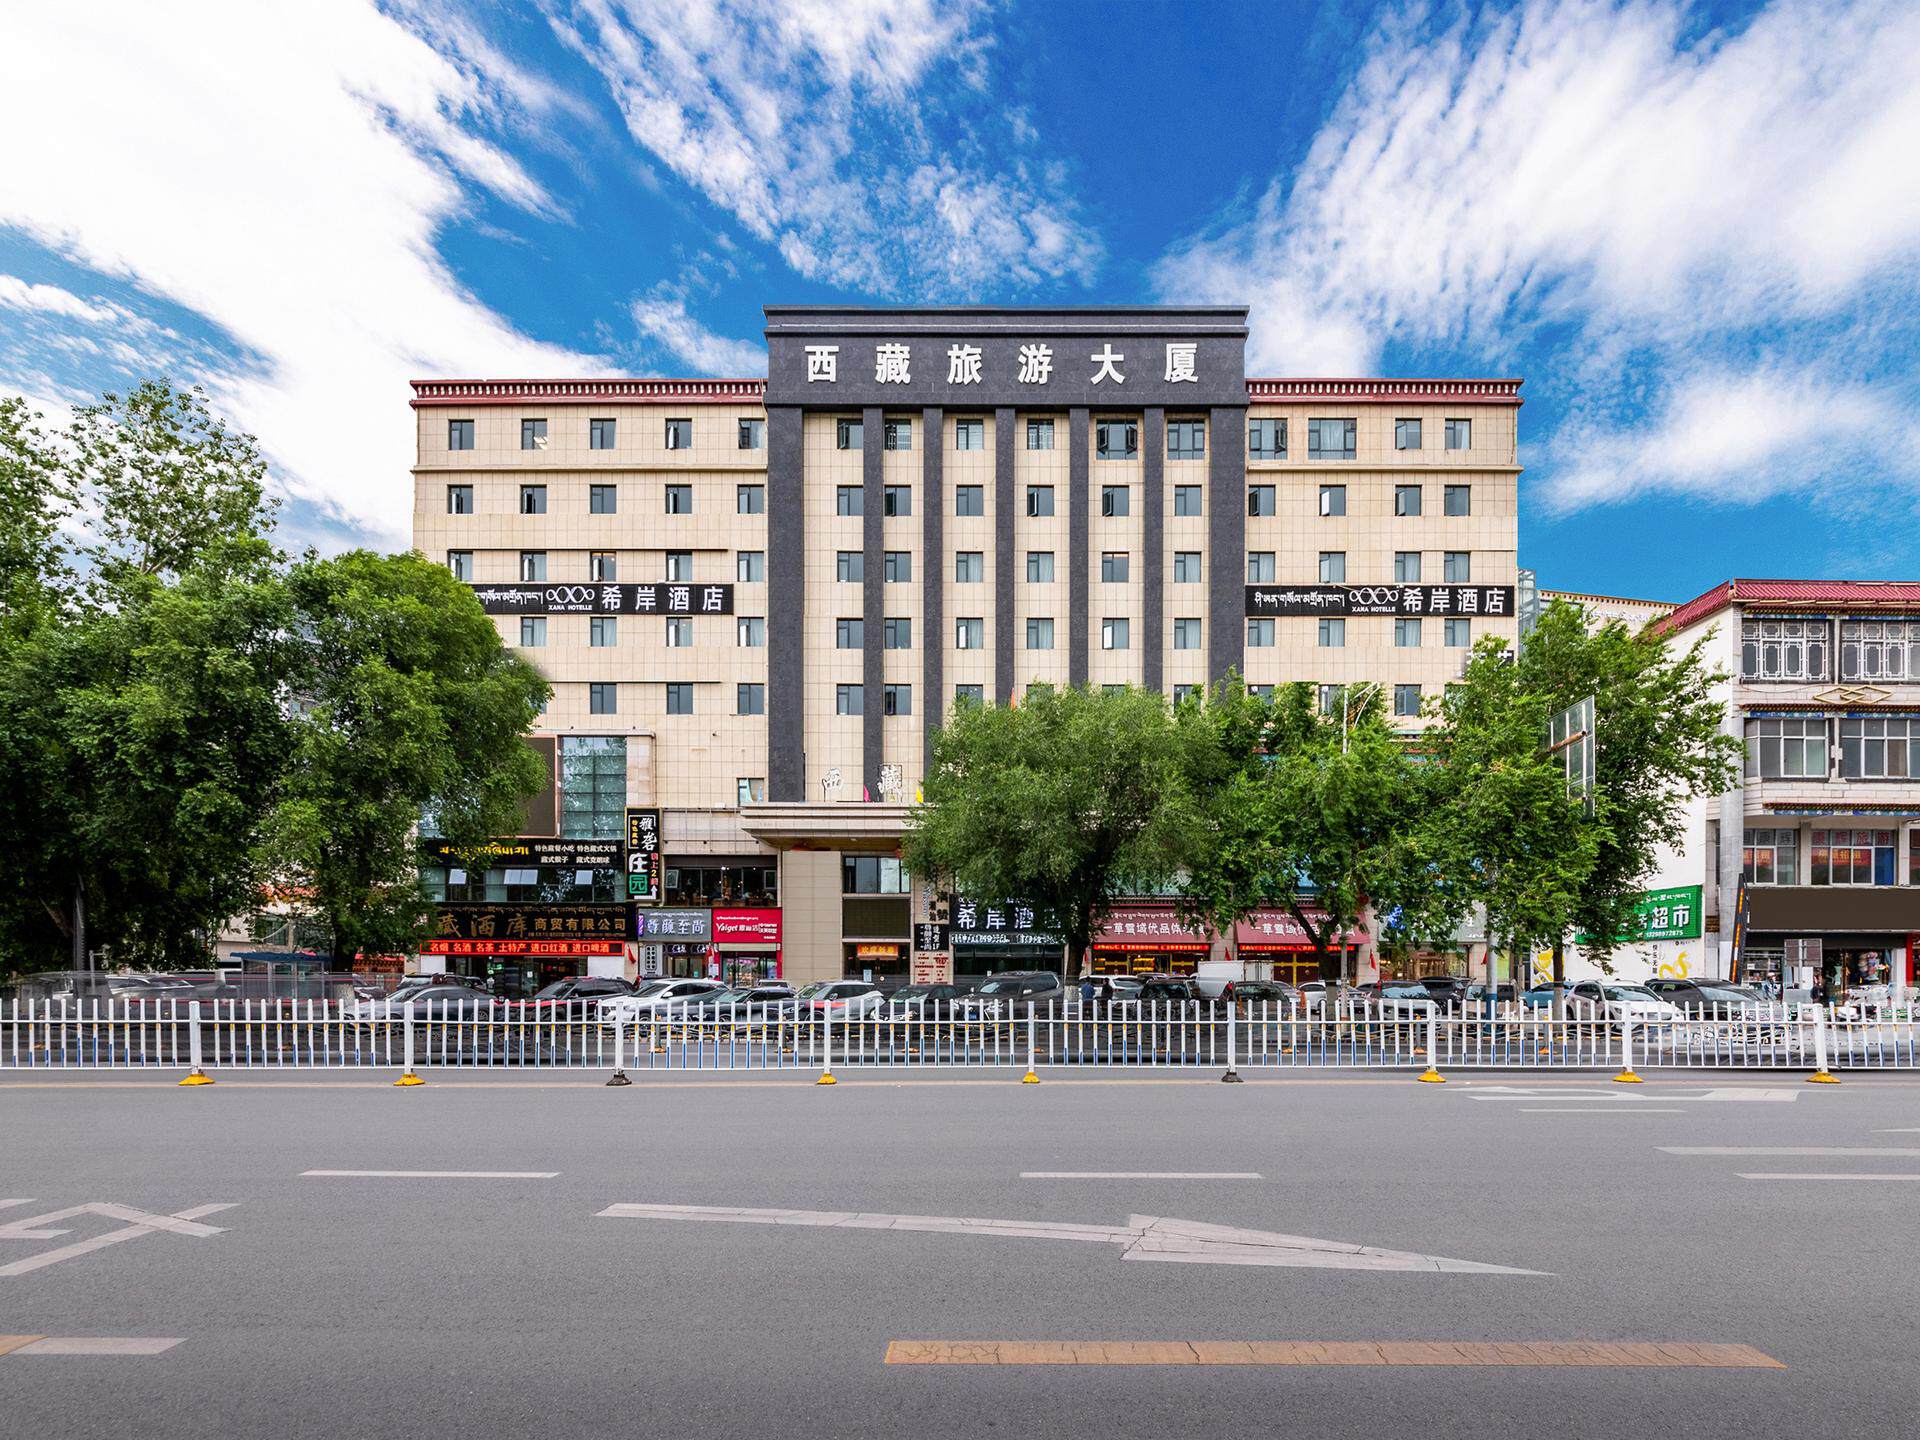 舒适型地址:城关区北京西路3号西藏旅游大厦5f